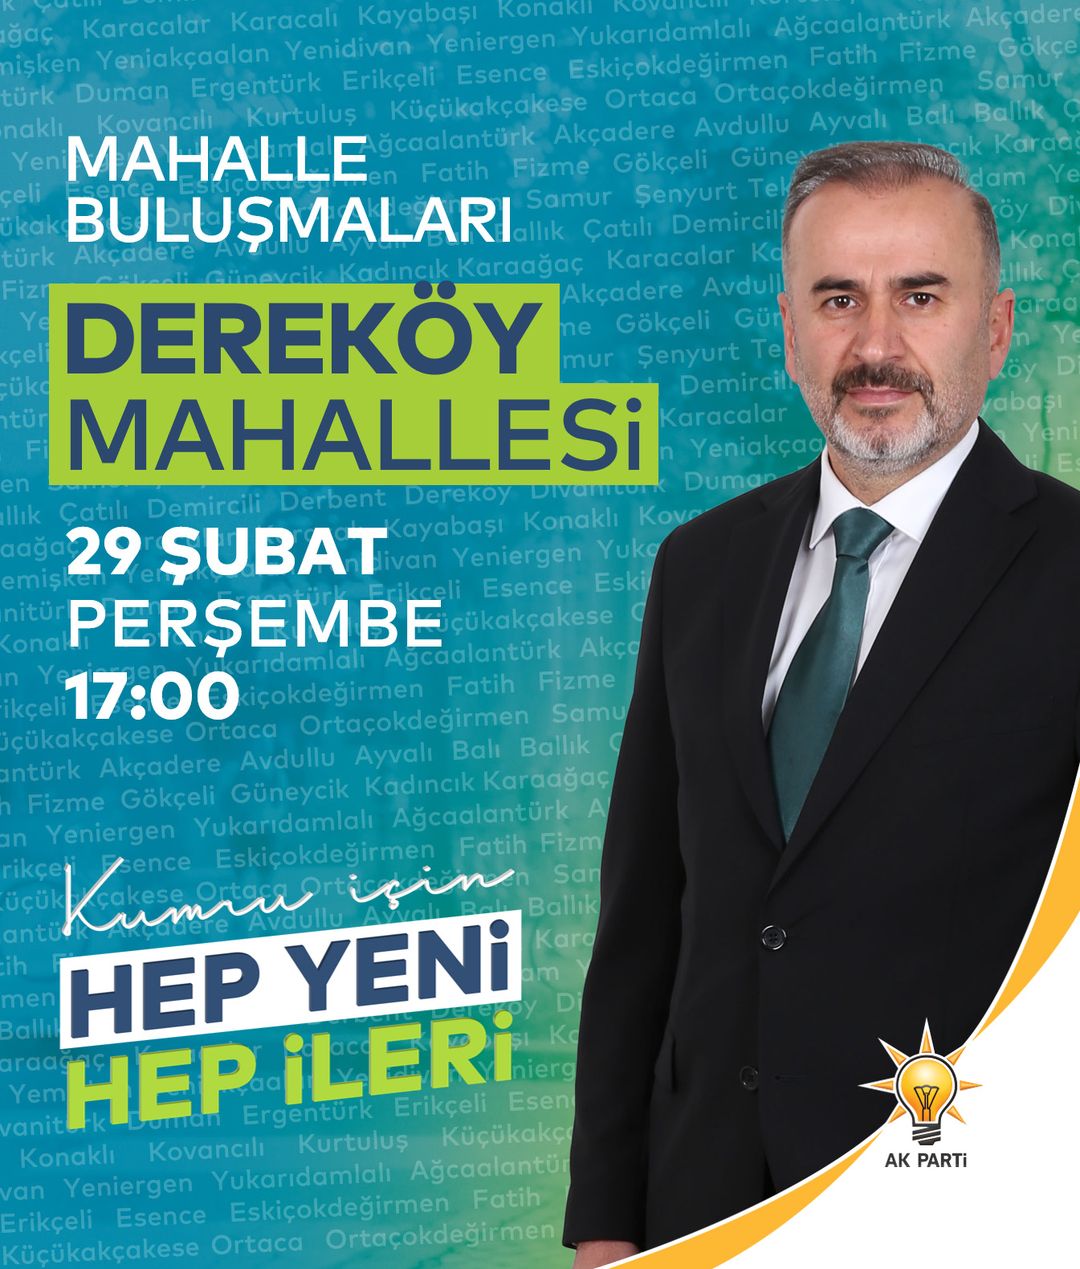 Kumru Belediye Başkanı, Dereköy Mahallesi'ne ziyaret gerçekleştirecek